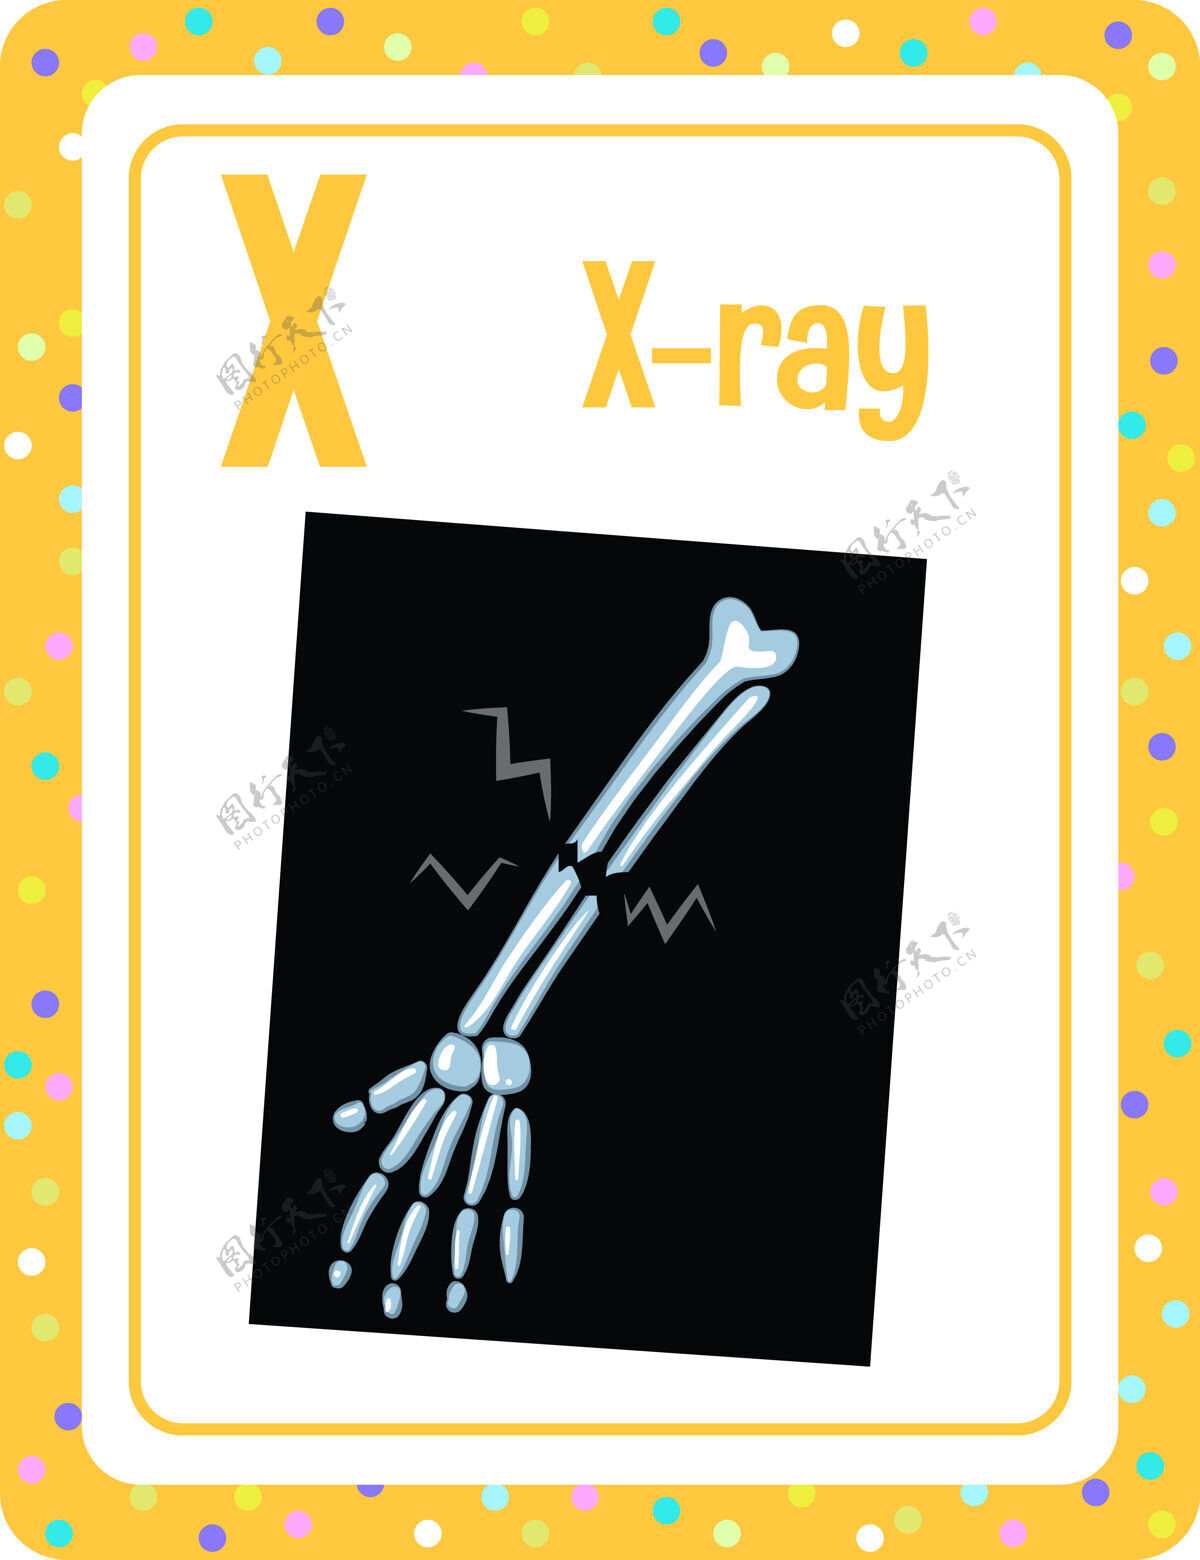 学习字母表抽认卡与字母x射线游戏单词抽认卡